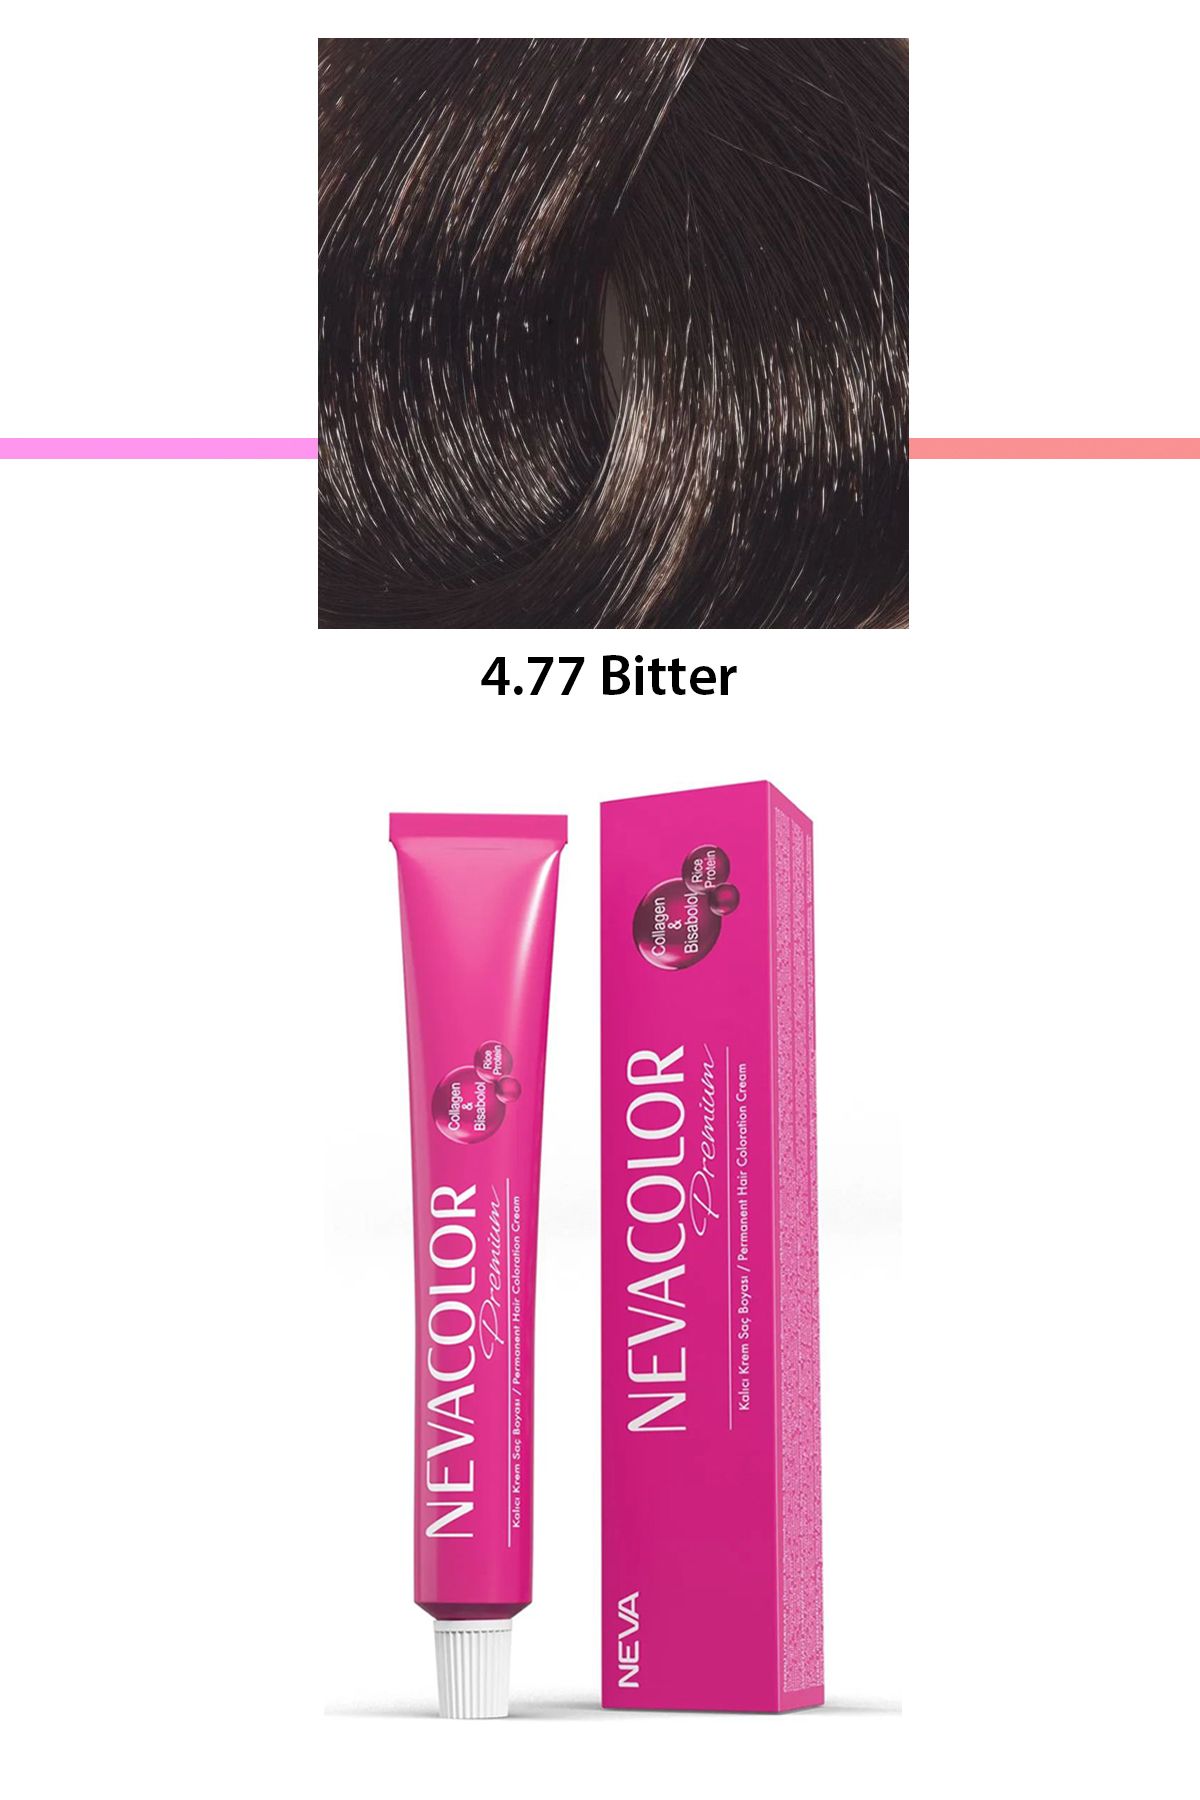 Neva Color Premium 4.77 Bitter - Kalıcı Krem Saç Boyası 50 g Tüp